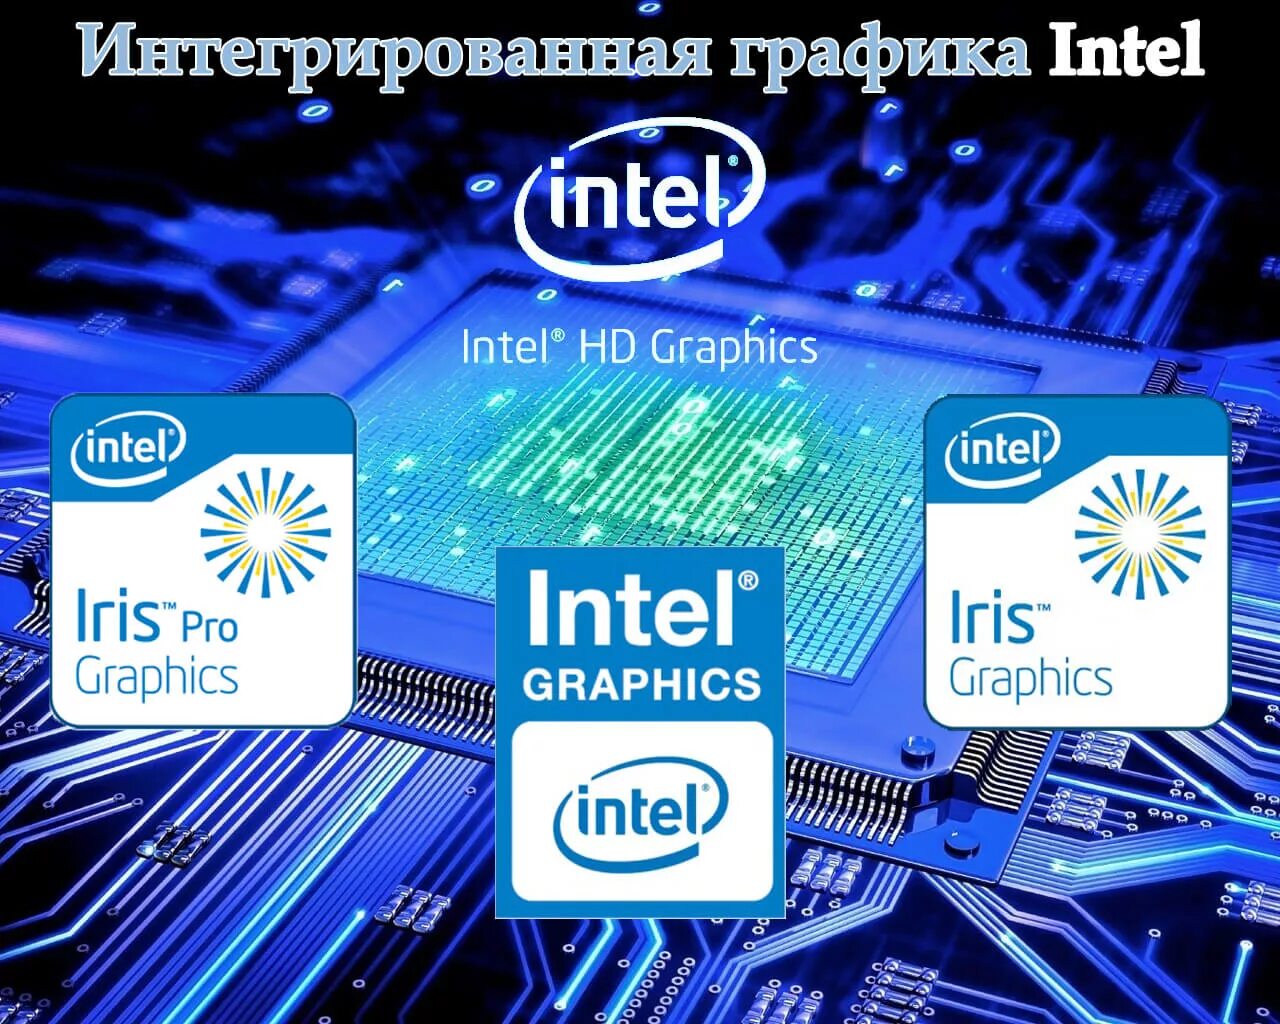 Intel graphics 4. Графический процессор Интел. Встроенная Графика Intel. Интел график. Графика Intel HD Graphics.